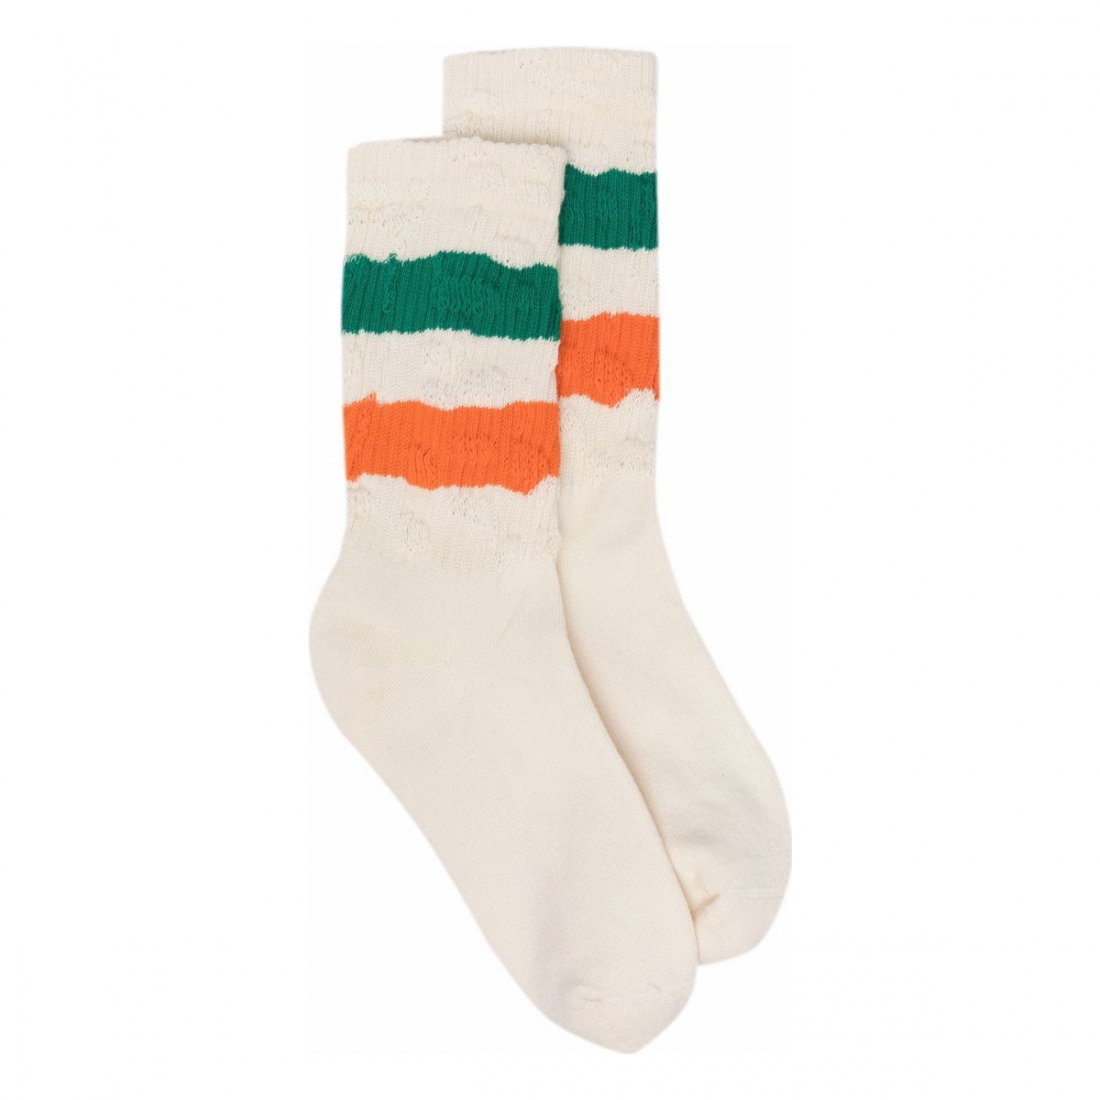 Men's 'Striped' Socks